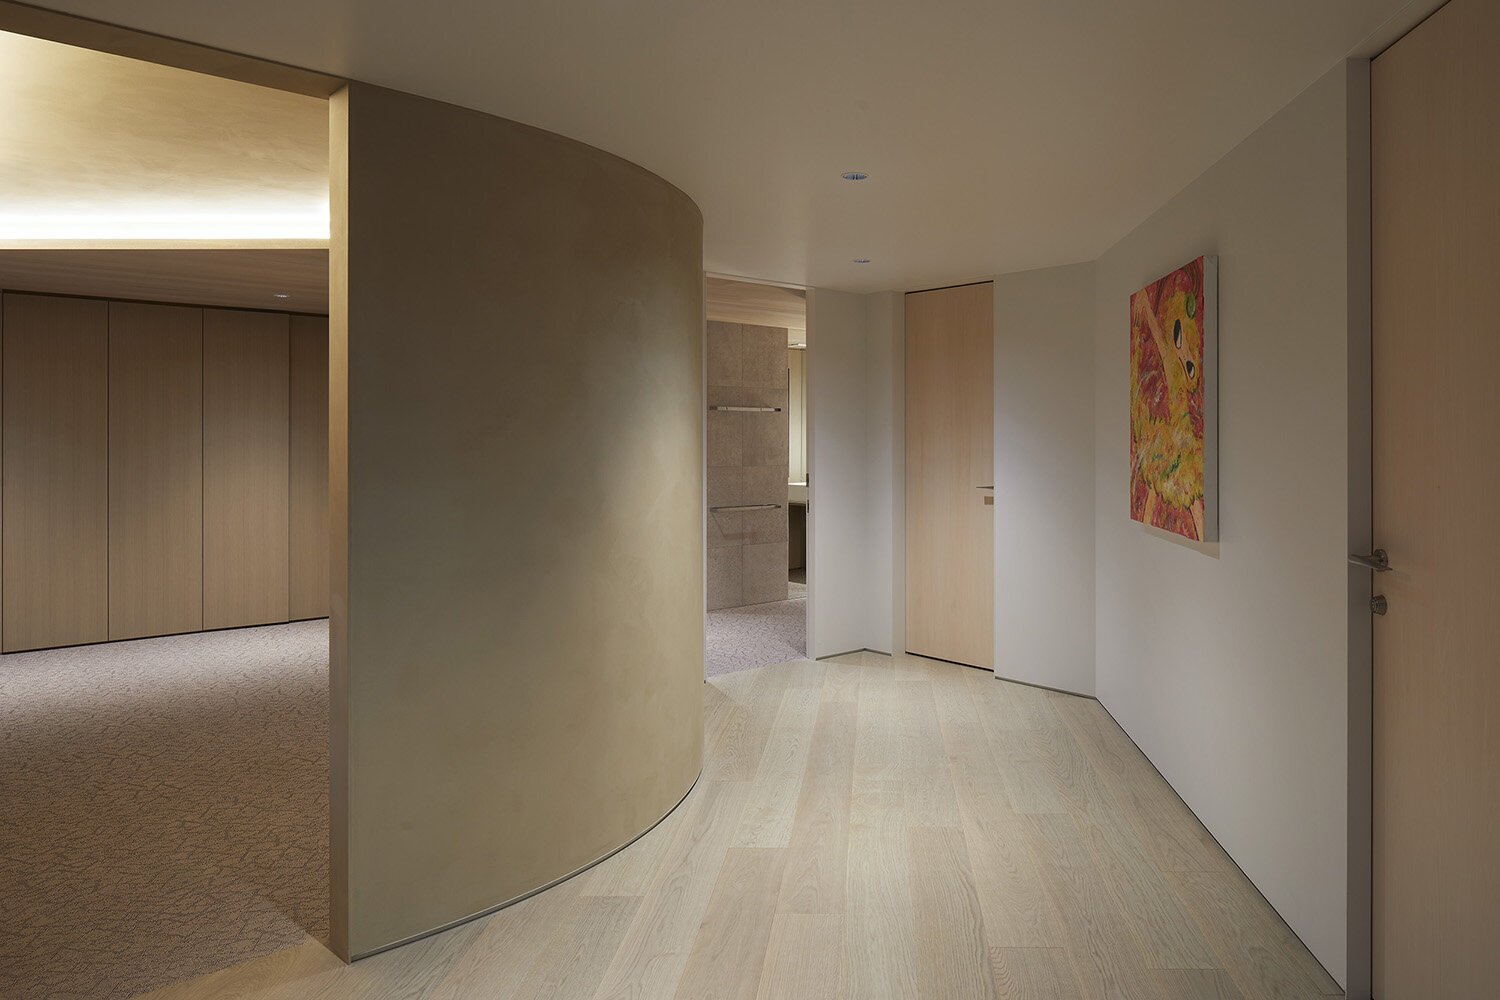  建築家 sinatoシナトの大野力が設計した住宅Shoto S。3階居室スペースのインテリアデザイン 